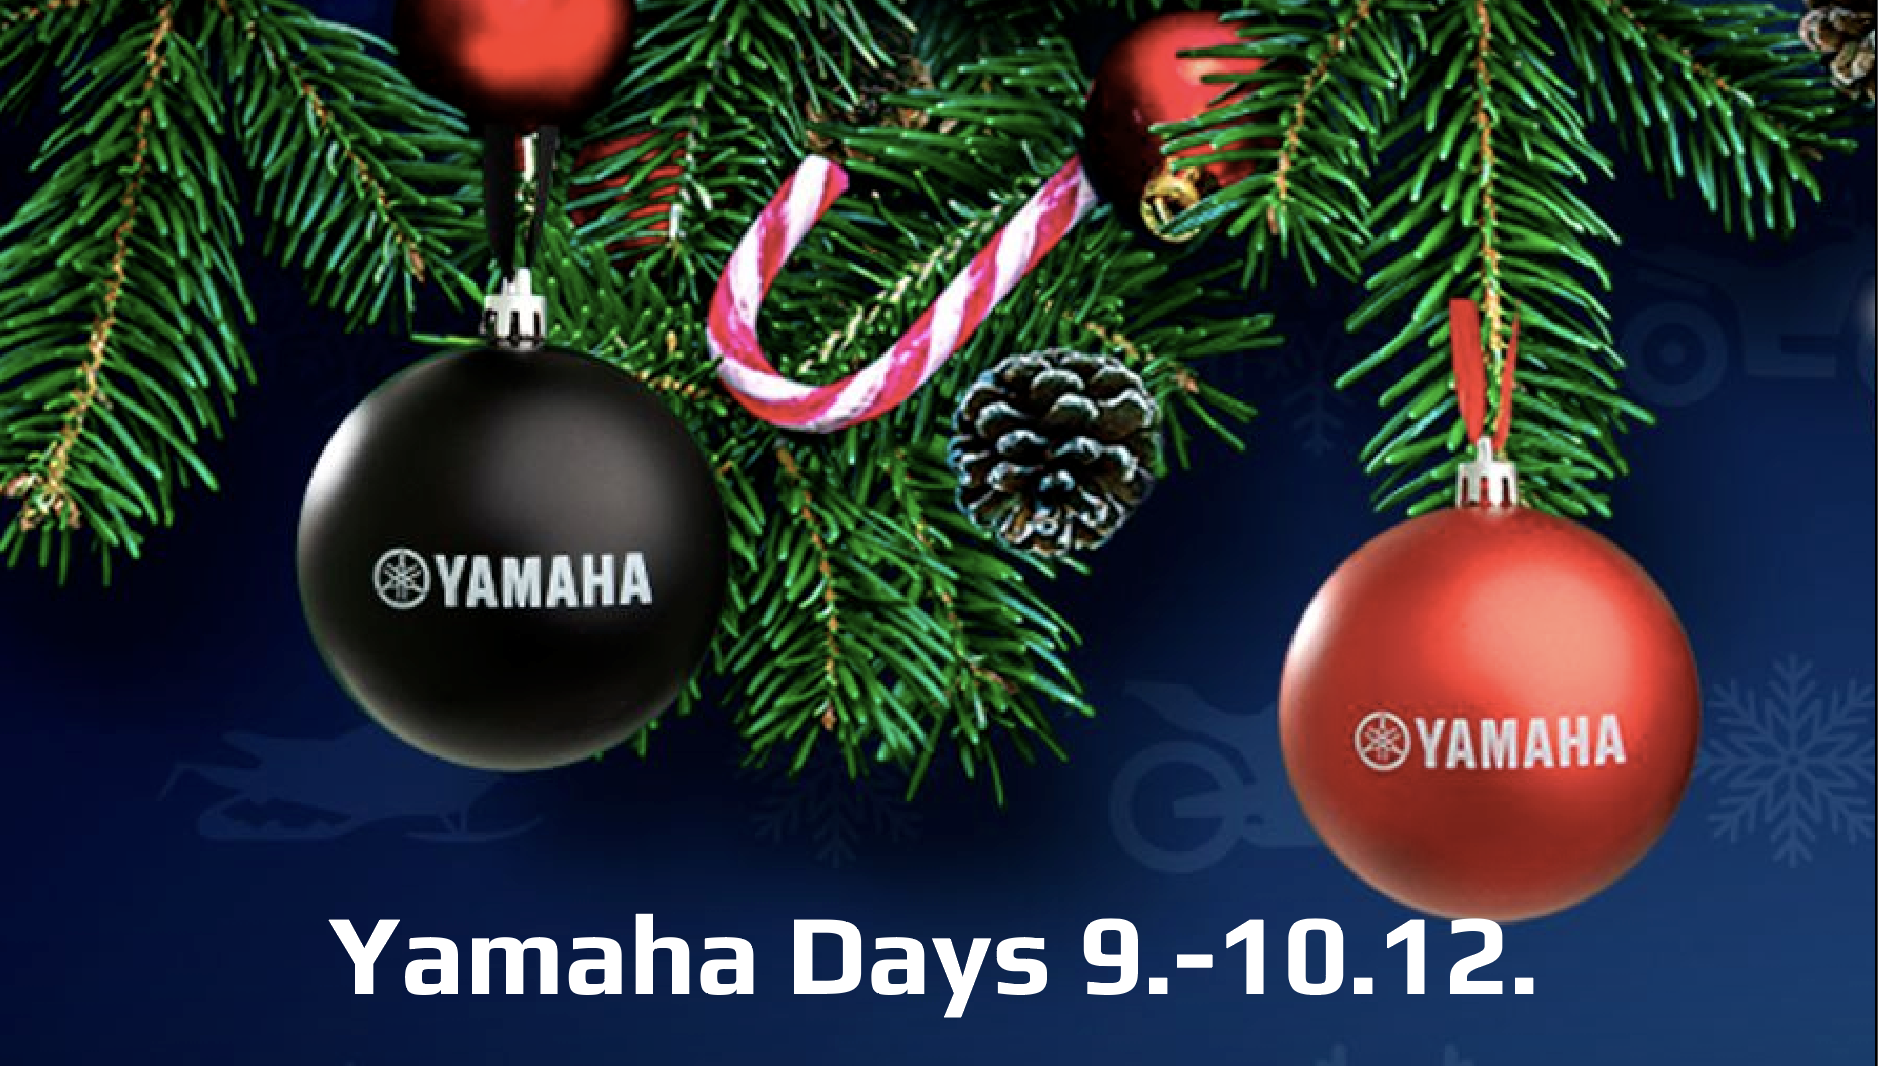 Vietämme Yamaha Centereissä Yamaha Days -avoimien ovien päiviä 9.–10. joulukuuta.